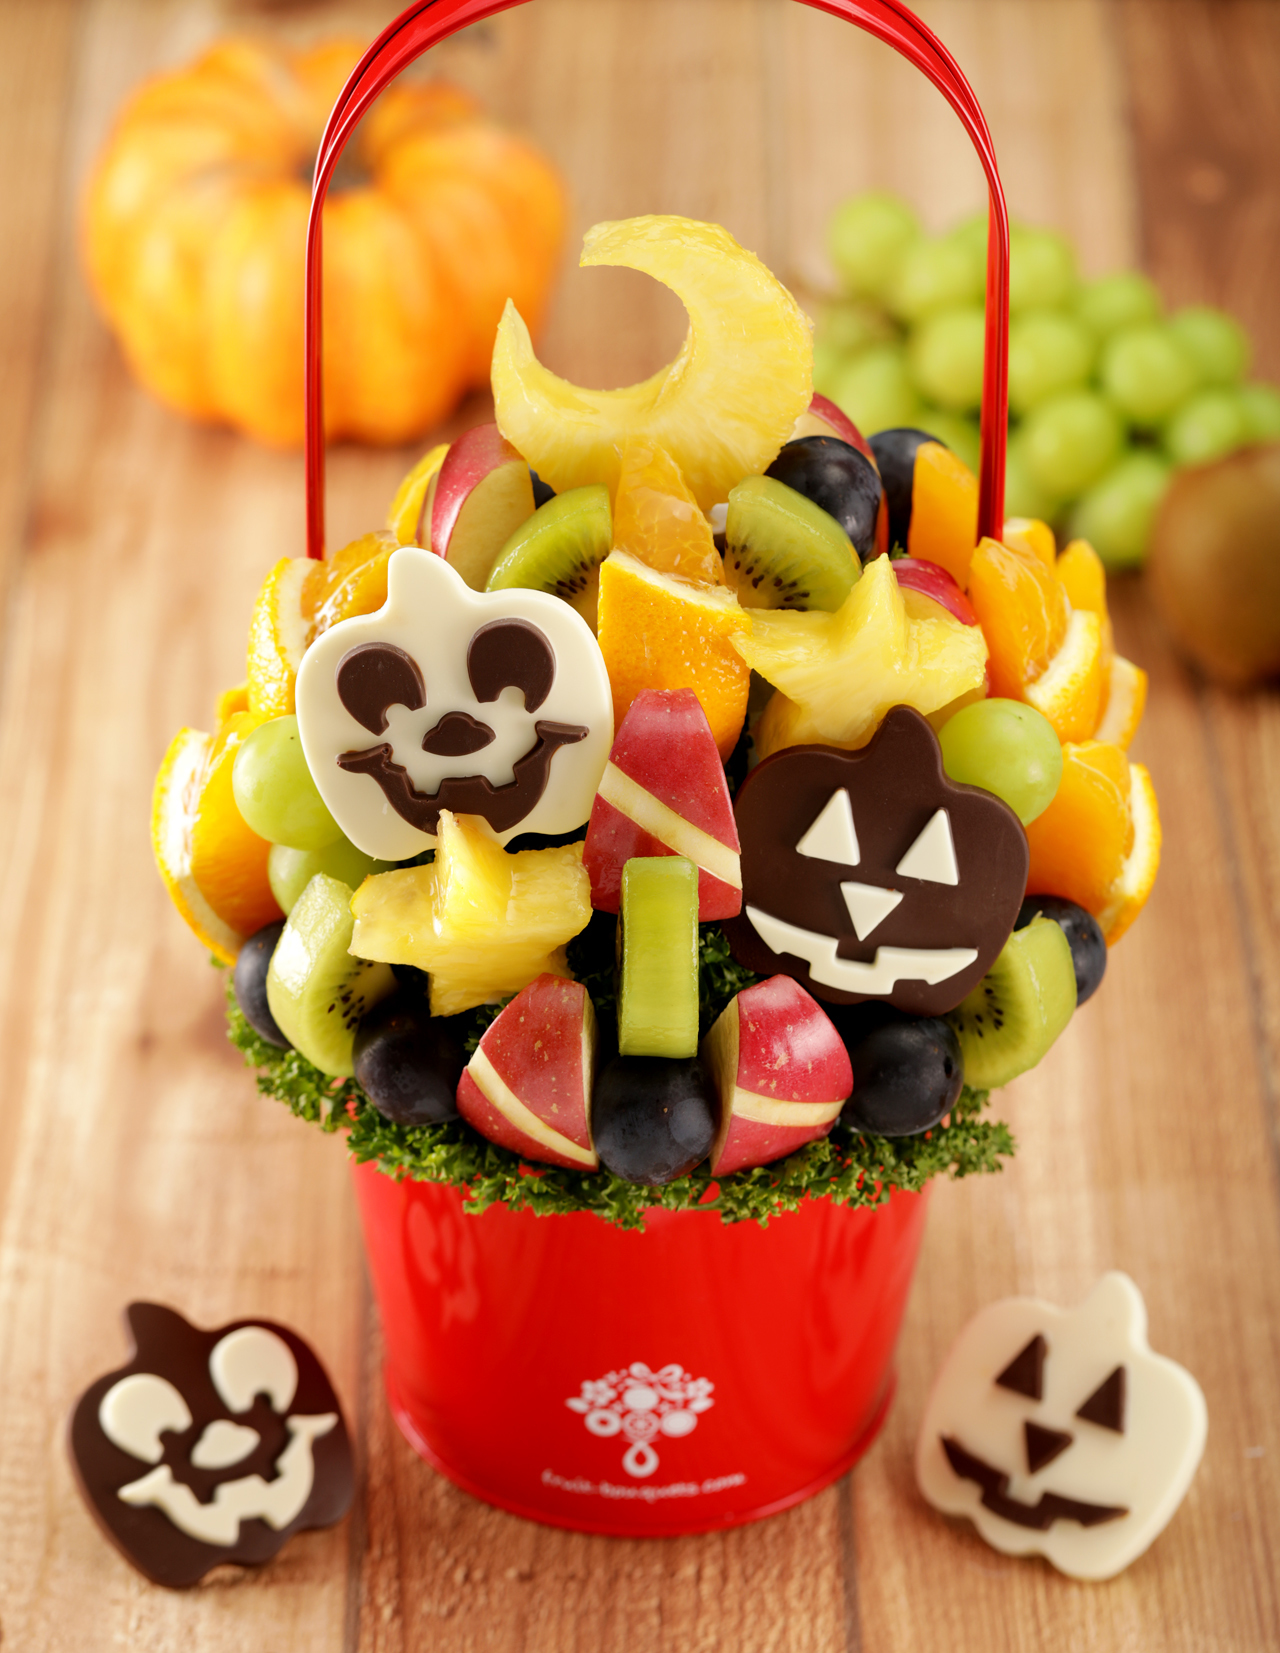 SNSでも話題のフルーツブーケにハロウィンデザインが登場
　秋のフルーツとフランス産高級チョコを使用